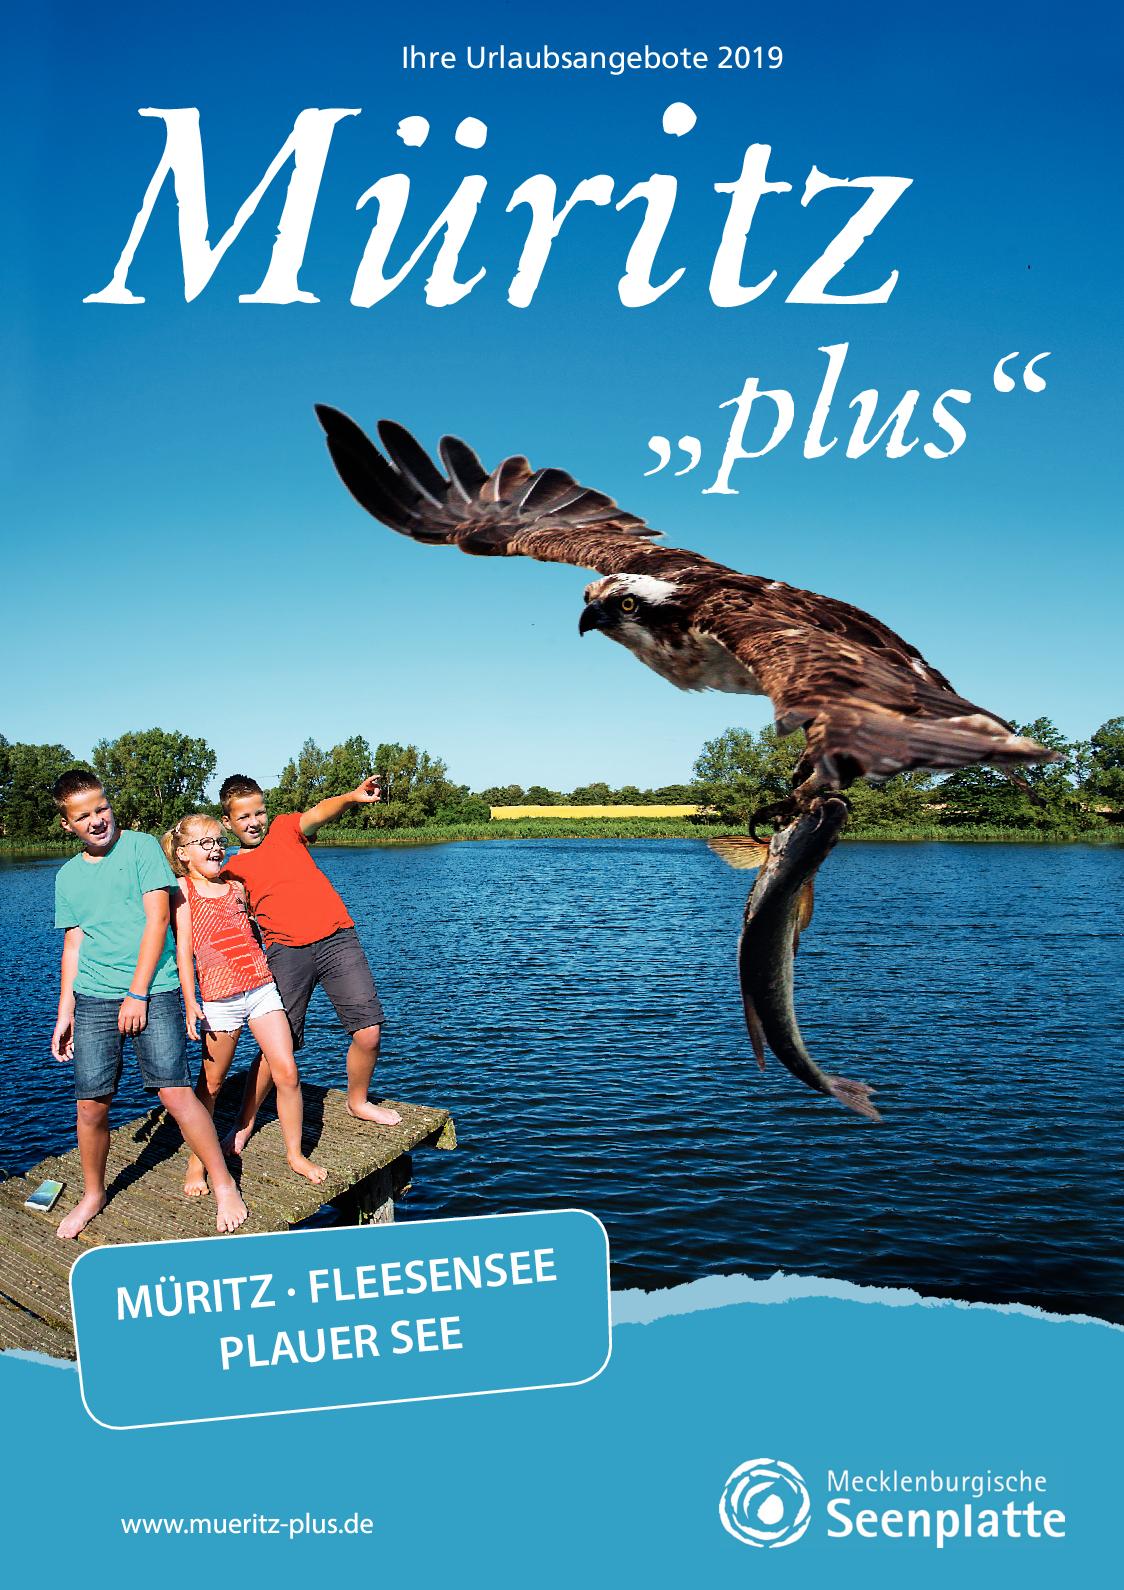 Terrasse Schön Gestalten Neu Calaméo Gastgeberverzeichnis Müritz Plus 2019